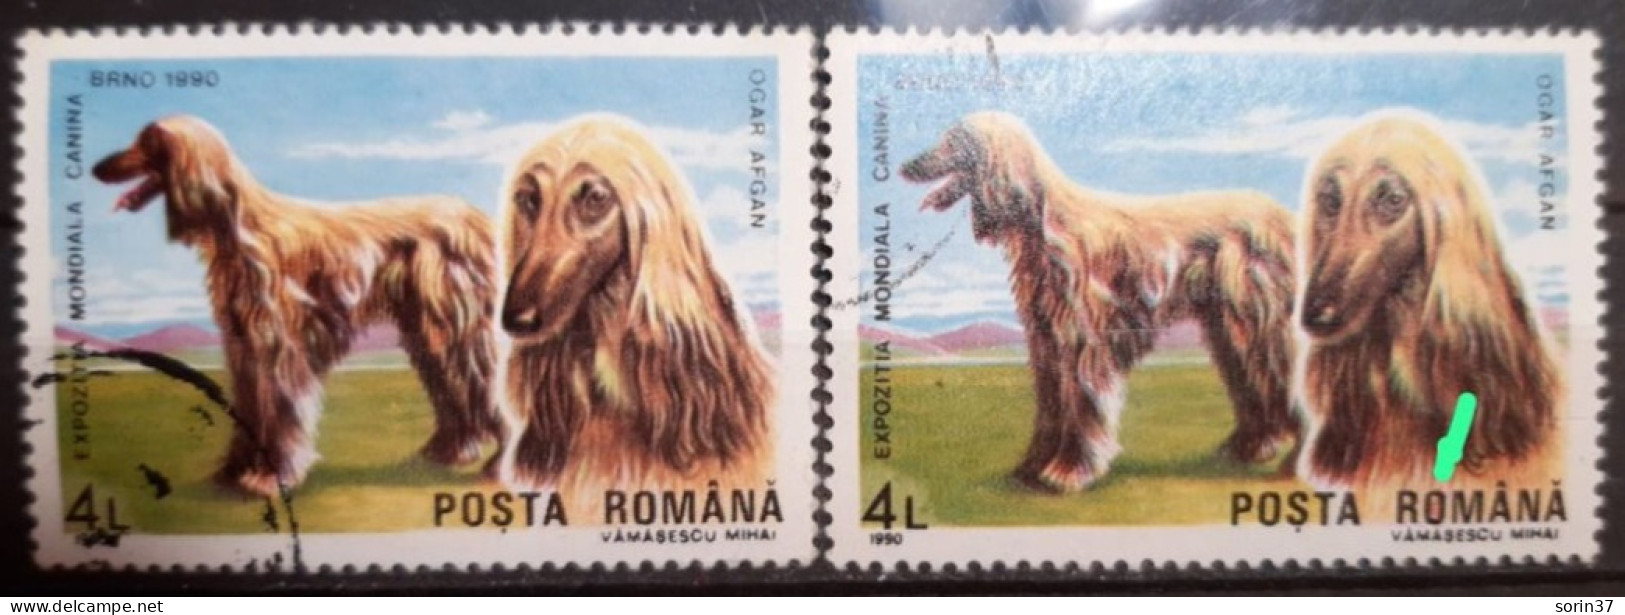 RUMANIA / ROMANIA / Error Año 1990 Yvert Nr. 3875 Usado O De Romania, Rojo Por Dentro - Abarten Und Kuriositäten